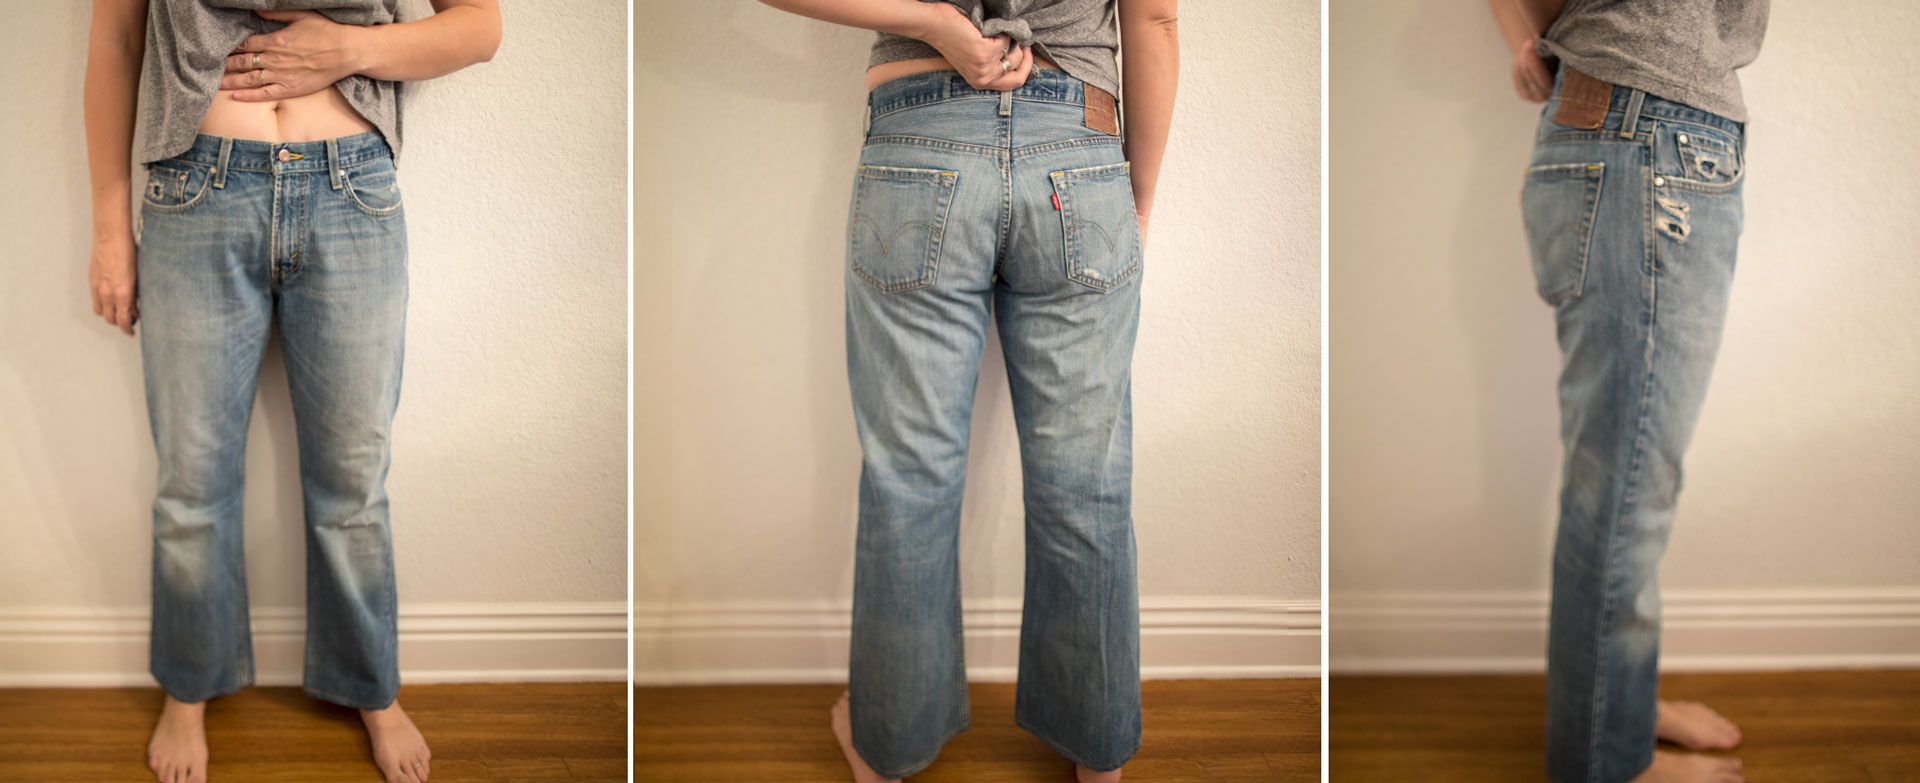 mens vintage levis 501 jeans